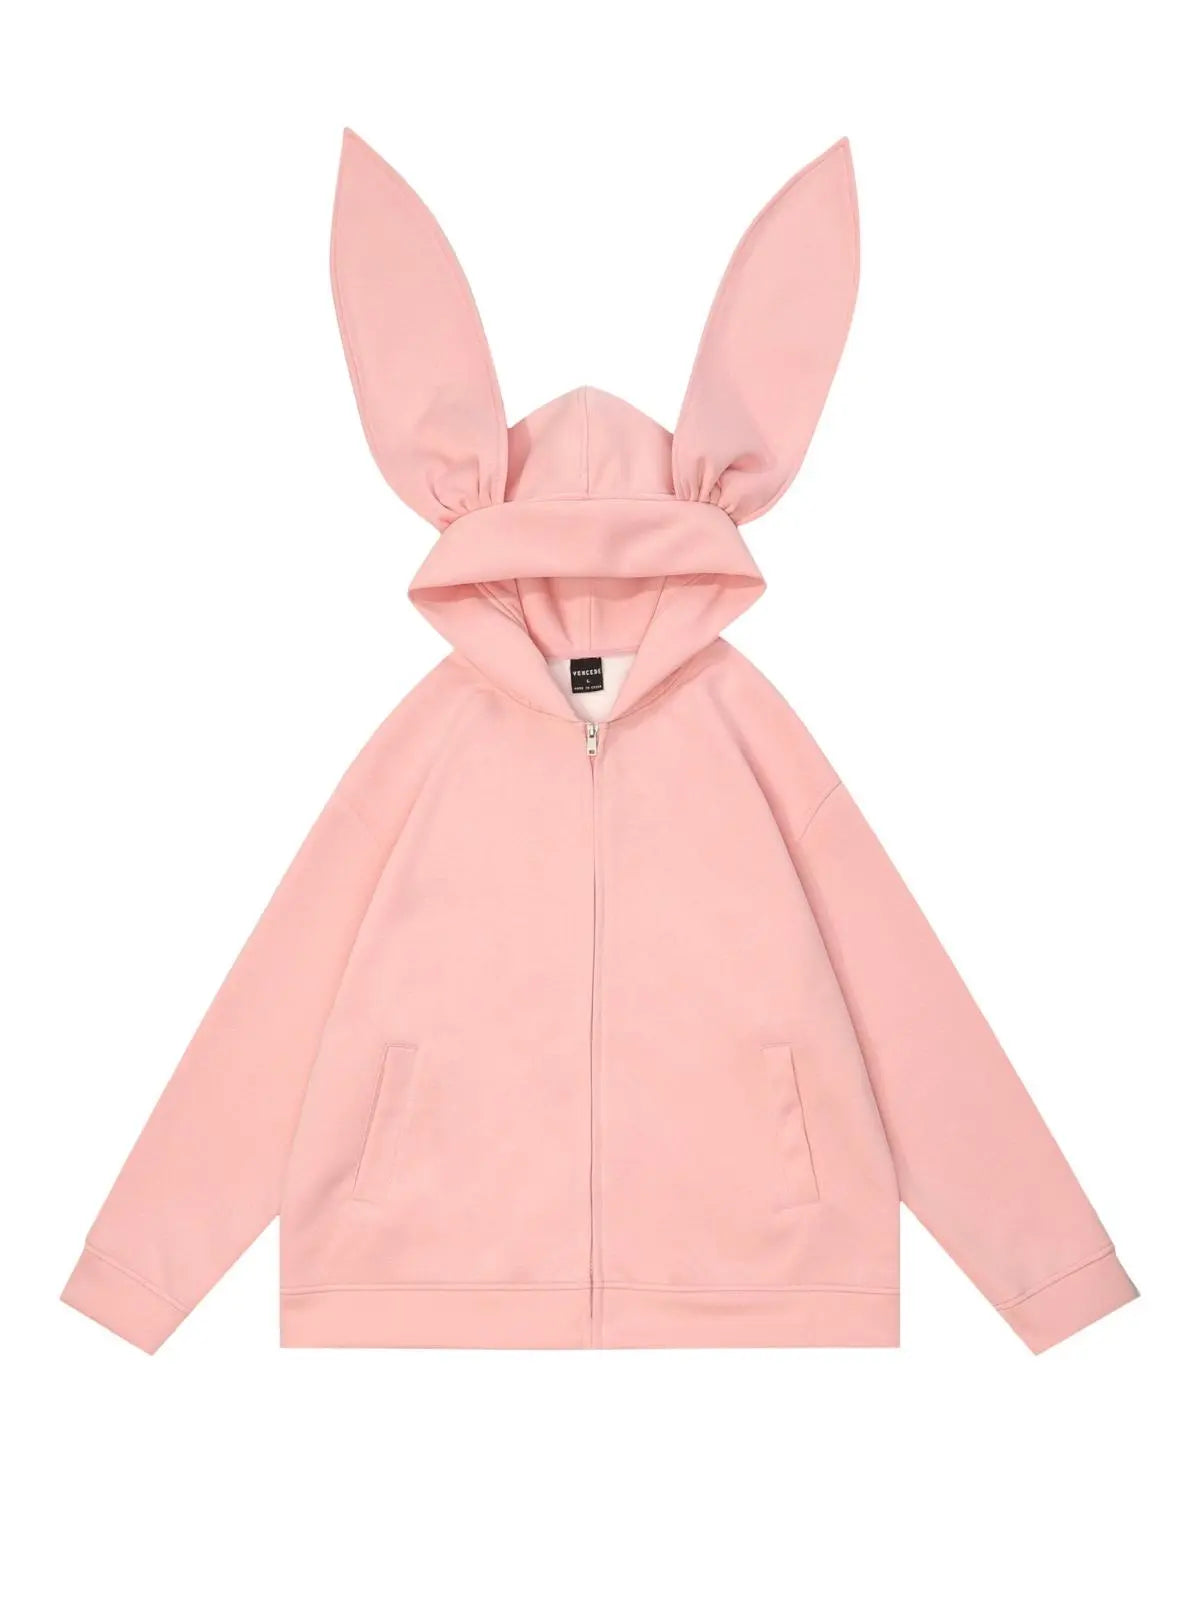 'Big Ears' Street Fashion Hooded Bunny Ears Sweatshirt AlielNosirrah